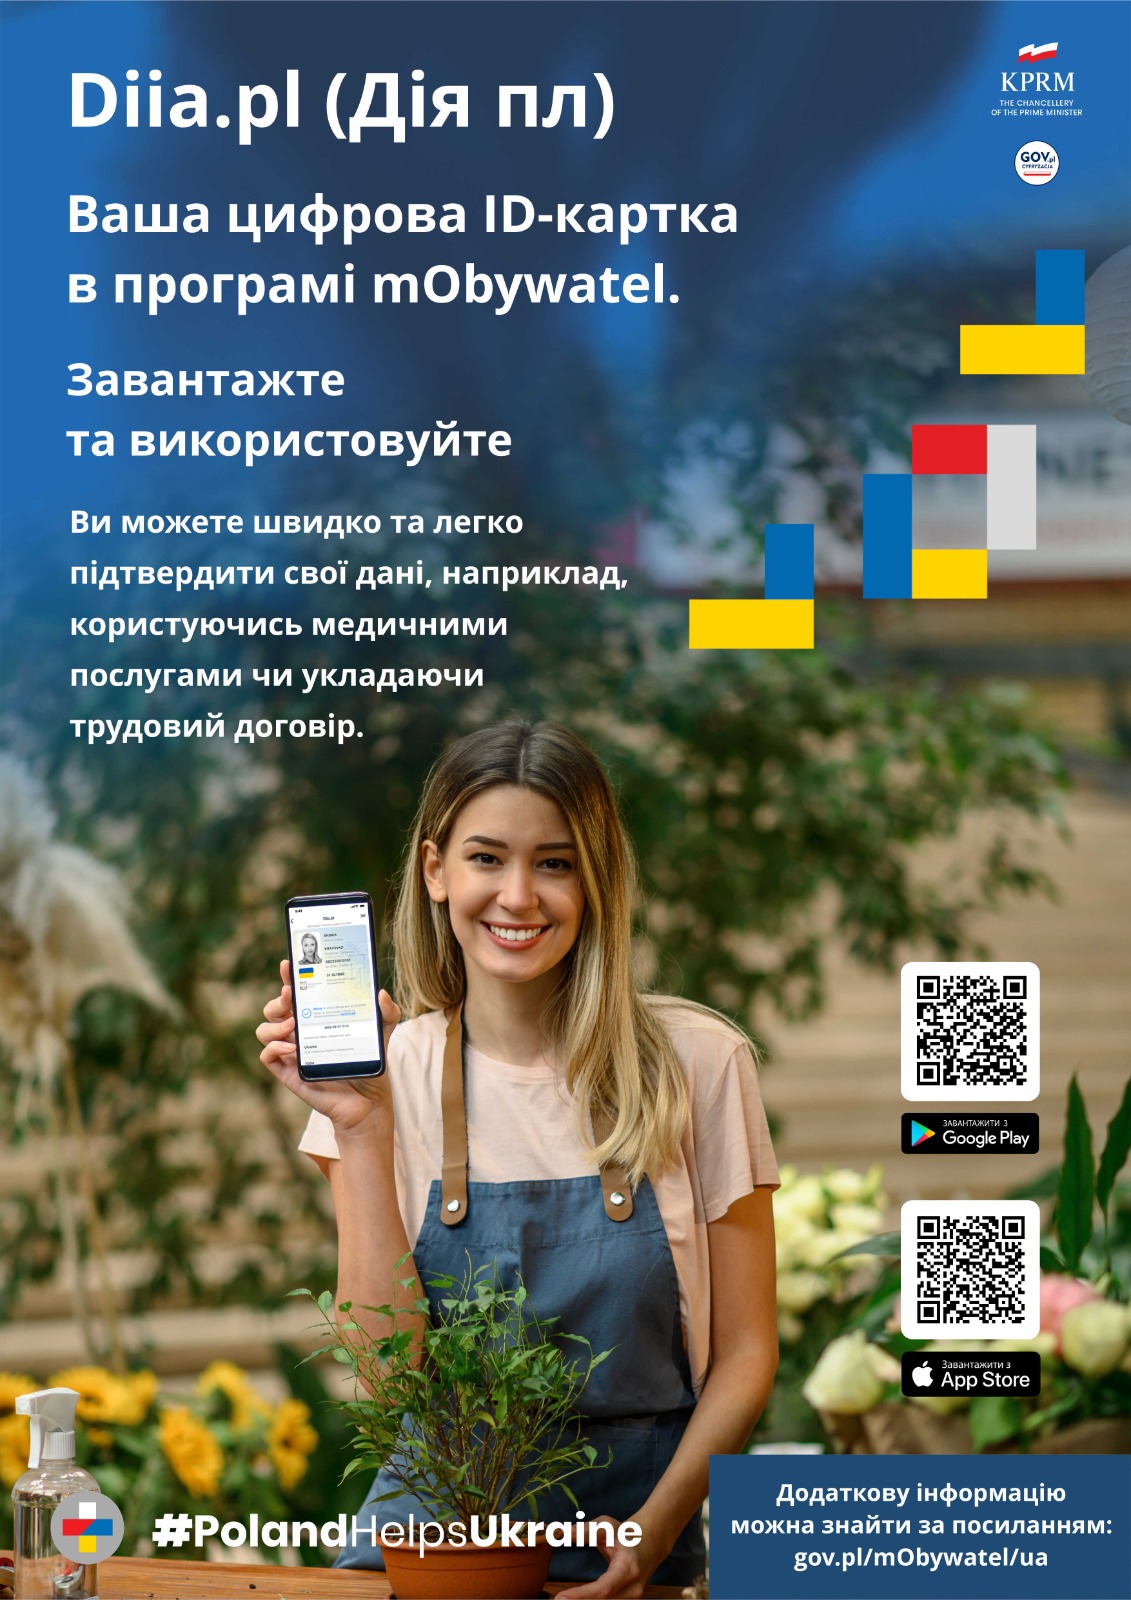 Diia.pl. Pomoc dla obywateli Ukrainy